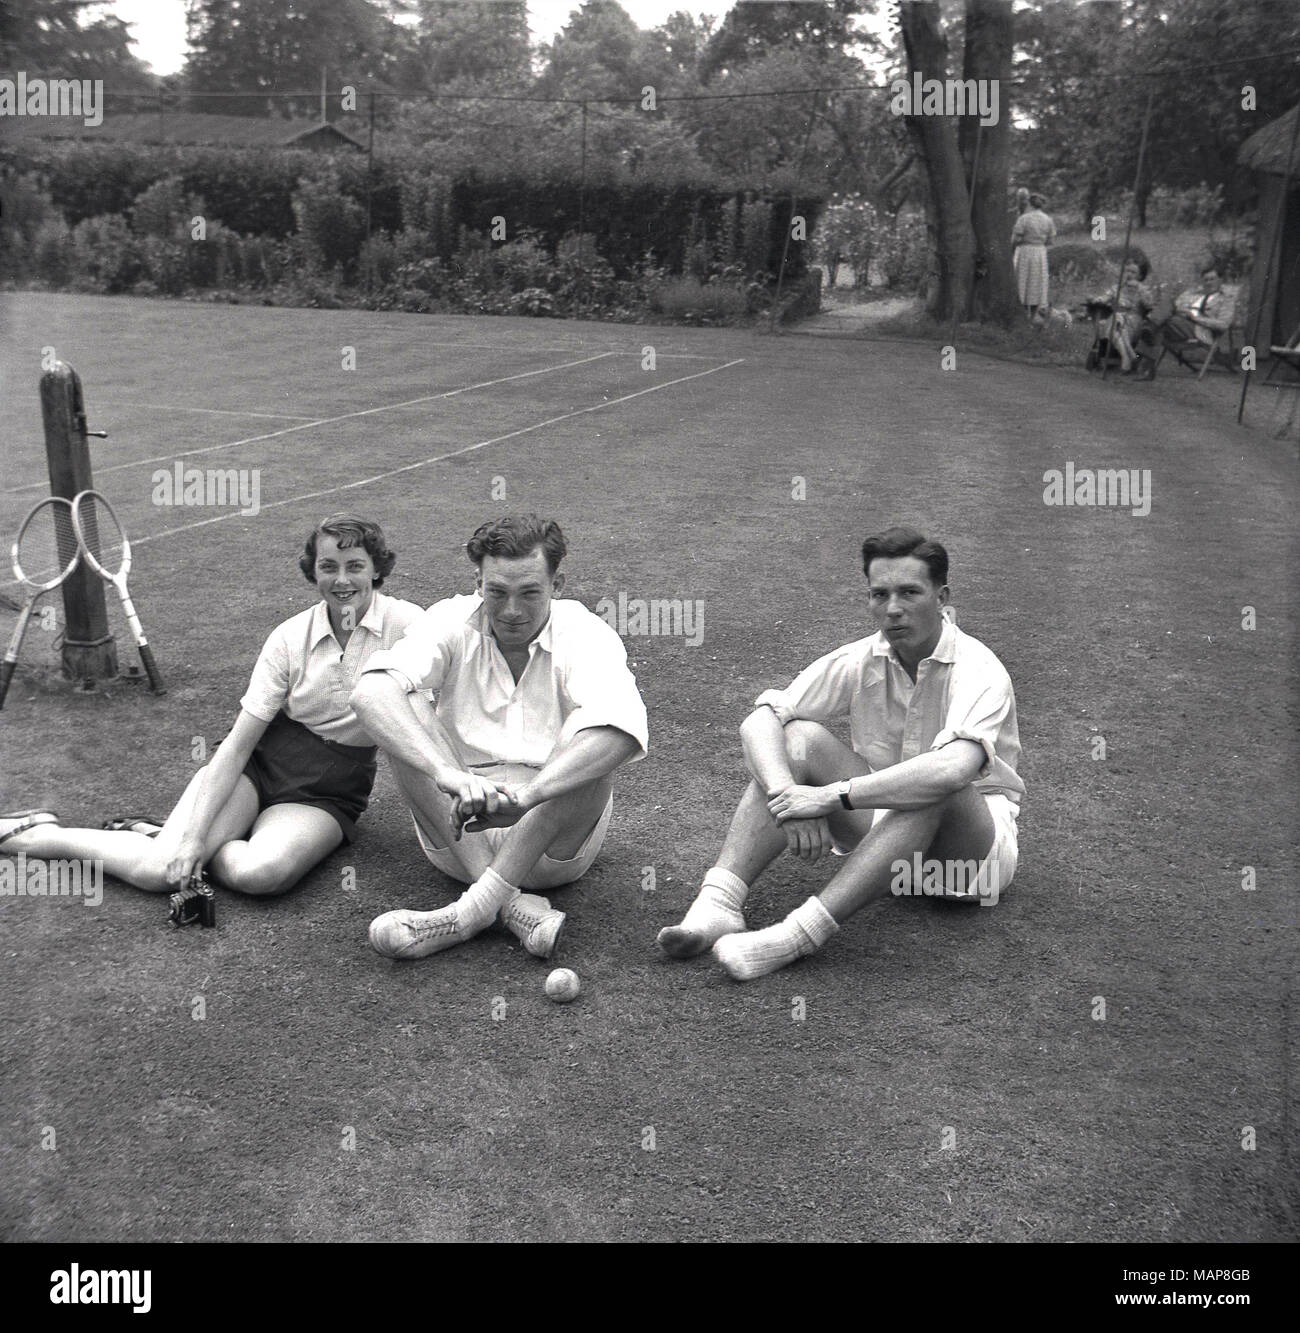 1954, historiques, les joueurs assis sur l'herbe, se détendre après une partie de tennis sur gazon à la maison de campagne du Bonham-Carter, Wyck Place, près de Alton, Hampshire, England, UK. Banque D'Images